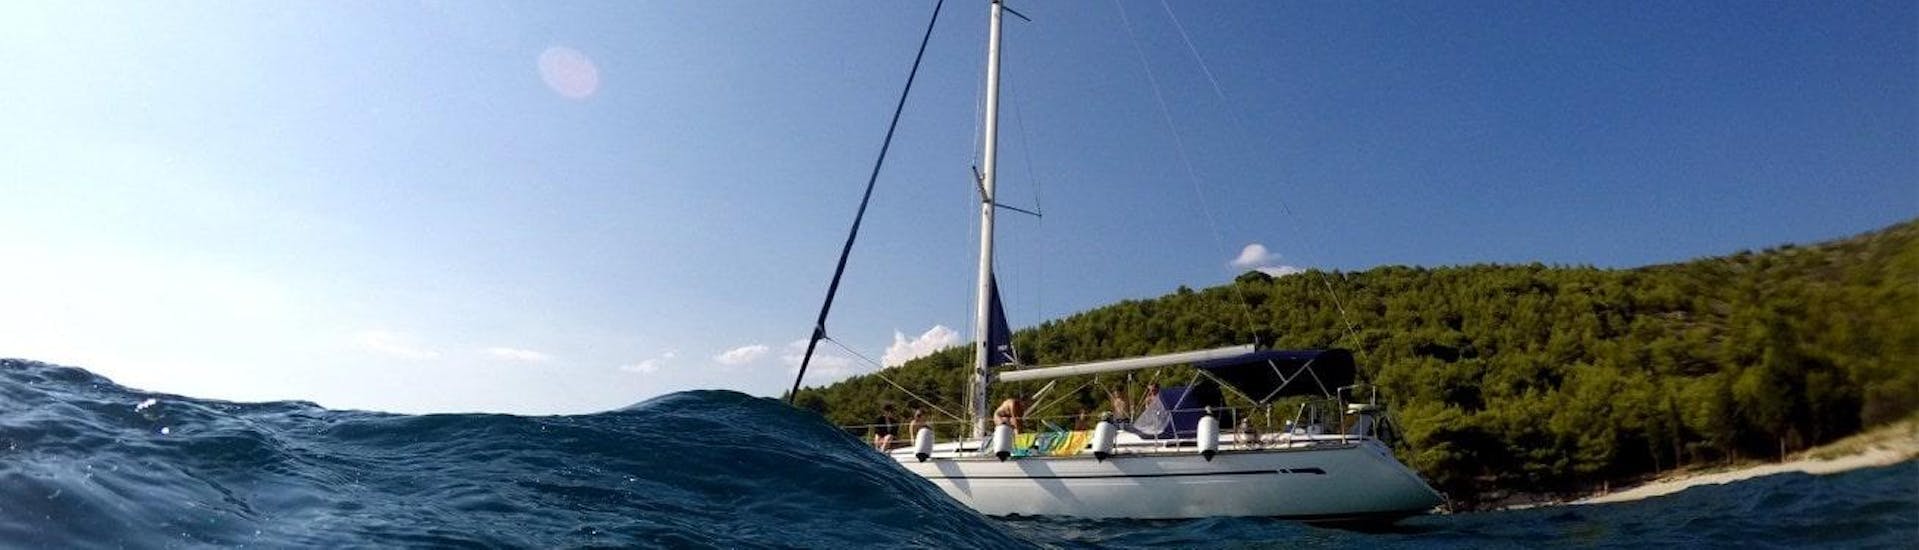 Foto de nuestro Tour privado en velero desde Tisno - Panorama Tour Šibenik